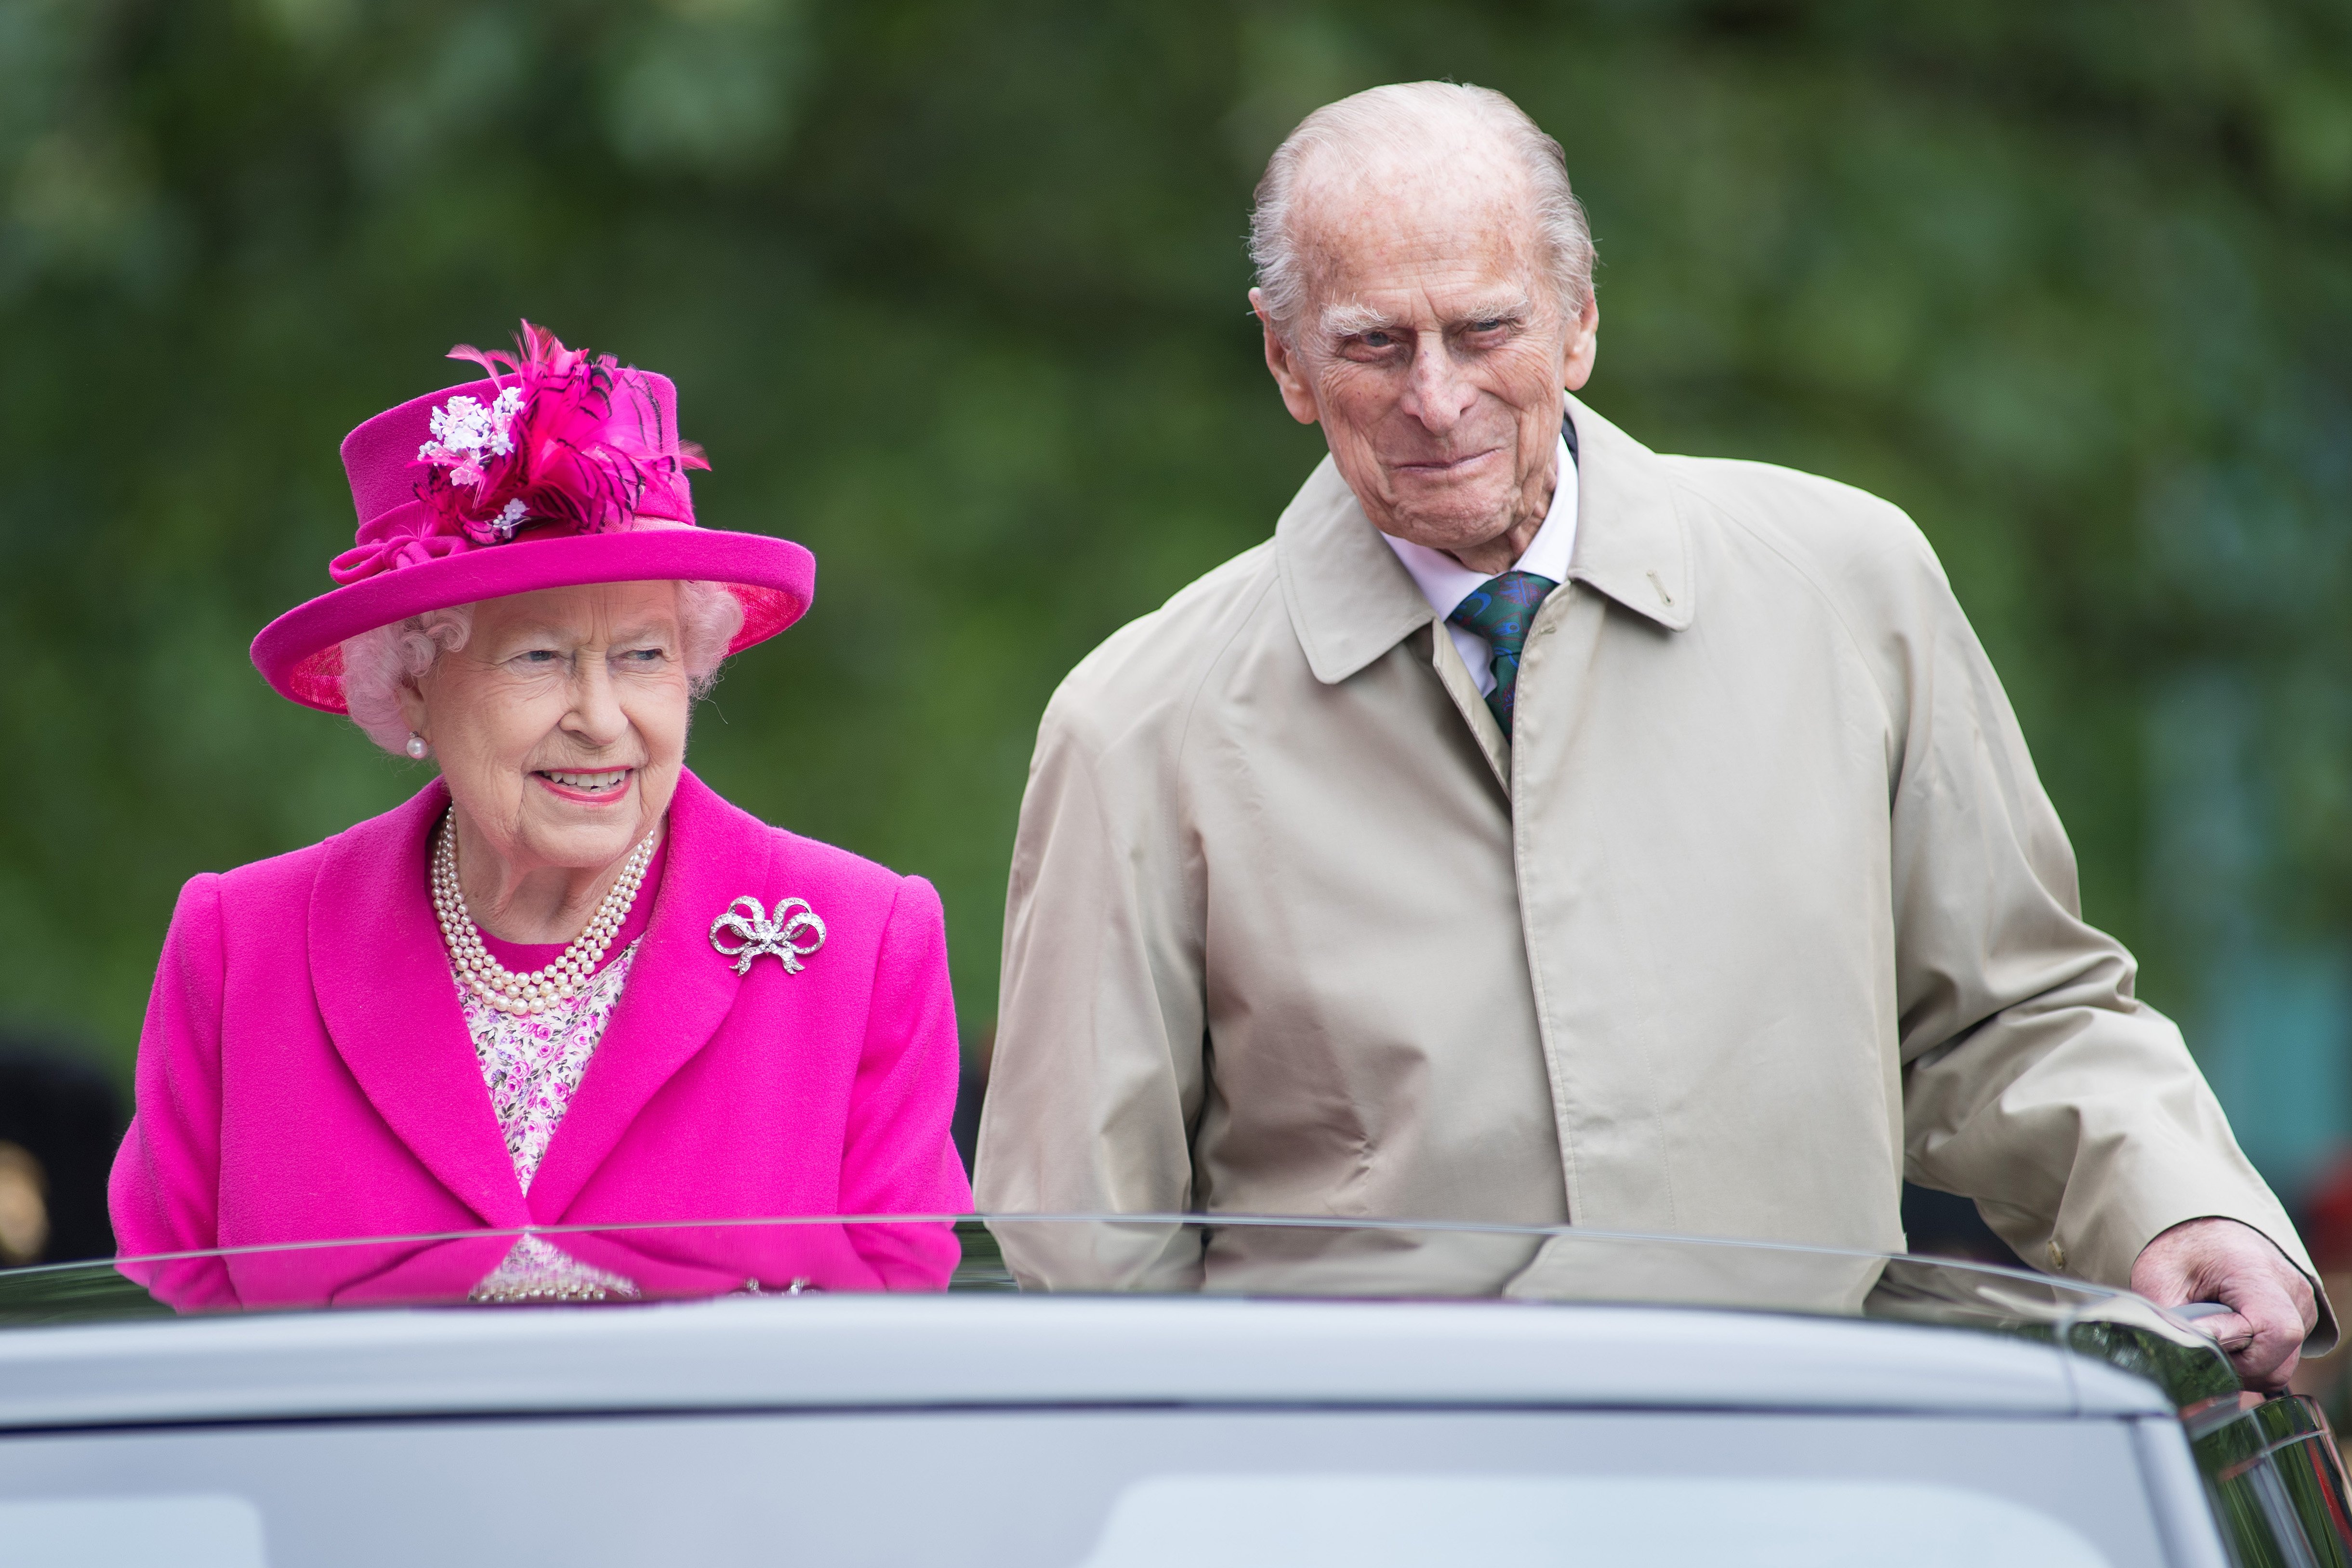 La reina Elizabeth II y el príncipe Philip en las celebraciones de "El almuerzo del patrón" por su 90 cumpleaños el 12 de junio de 2016 en Londres, Inglaterra. | Foto: Getty Images